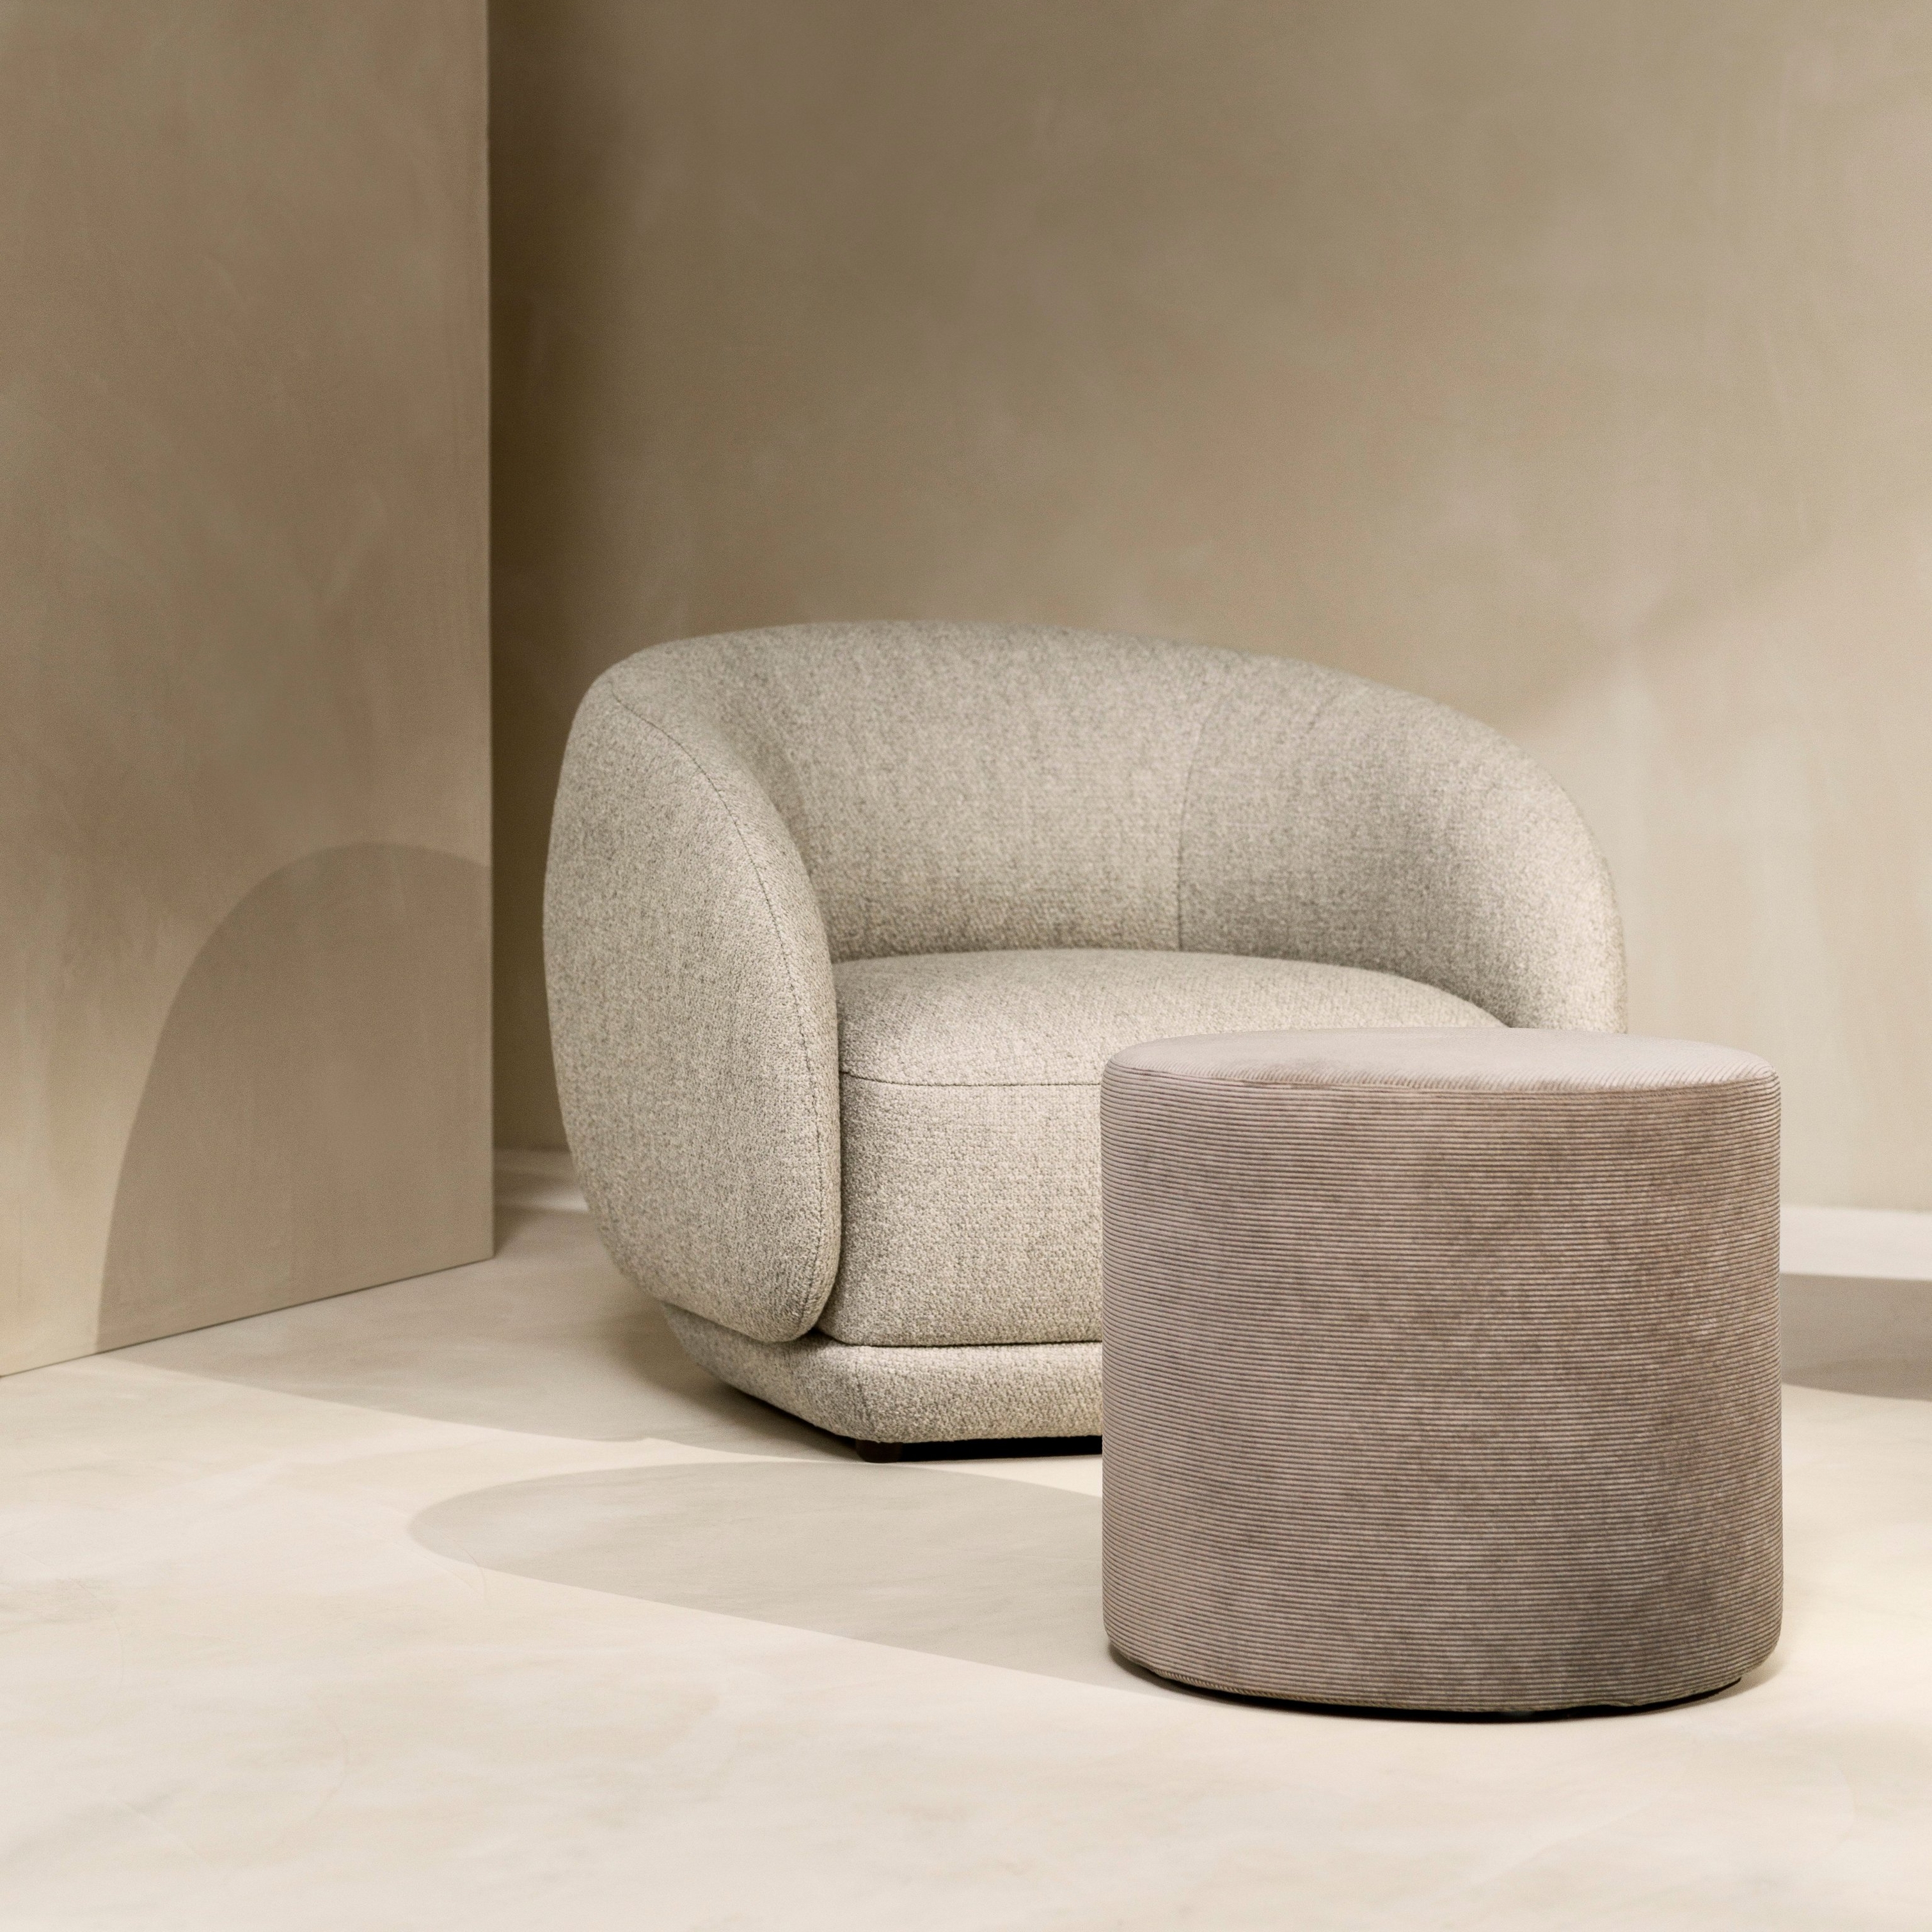 Rustige hoek met de Bolzano fauteuil in beige Lazio stof en de Eden voetenbank in zandkleurige Skagen stof.